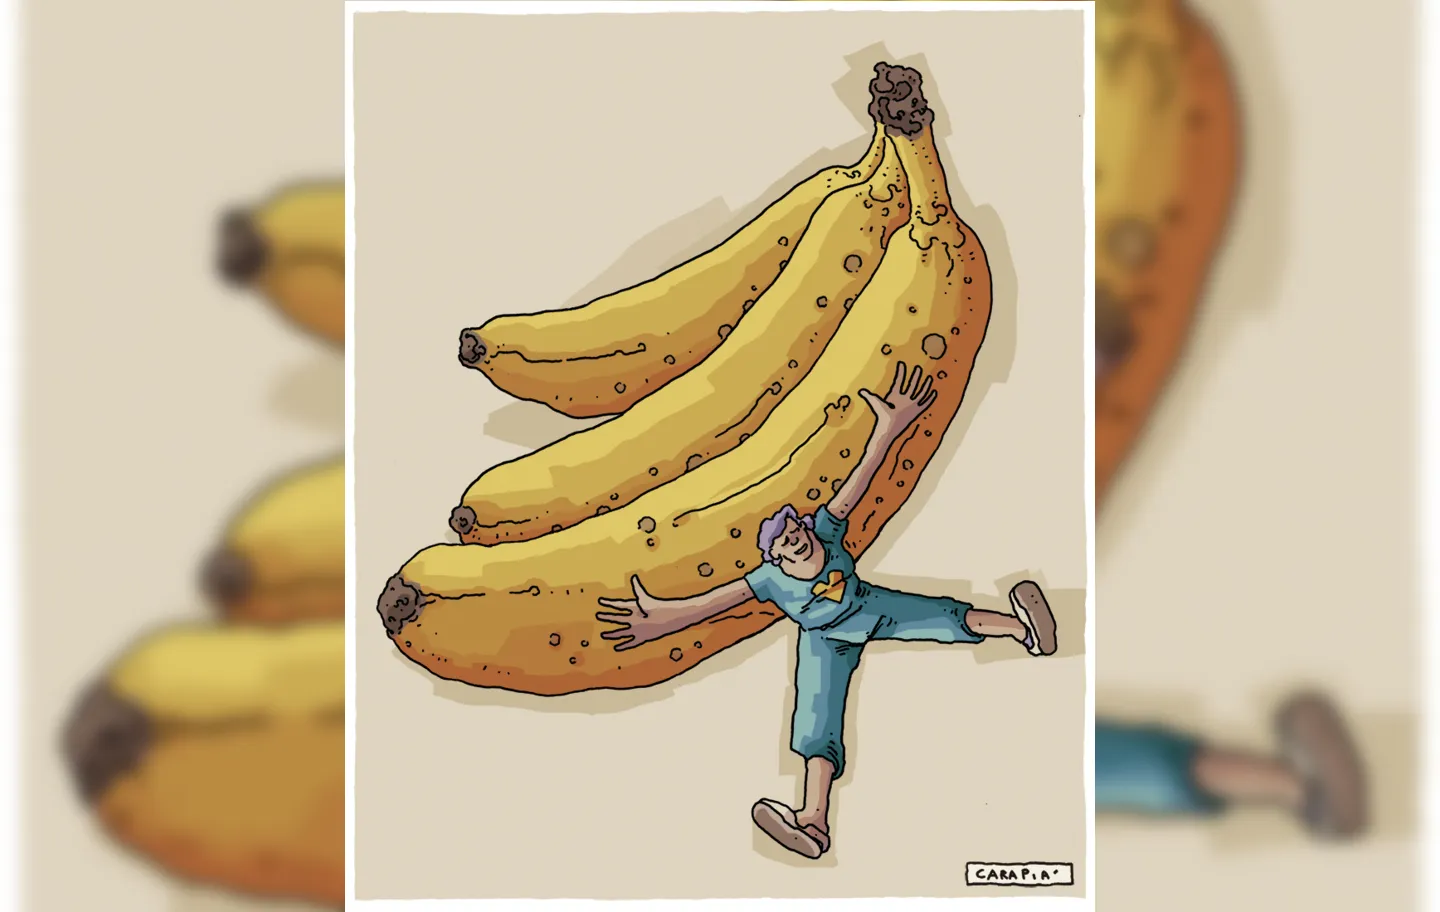 Uma banana nos mostra diversas formas de existir